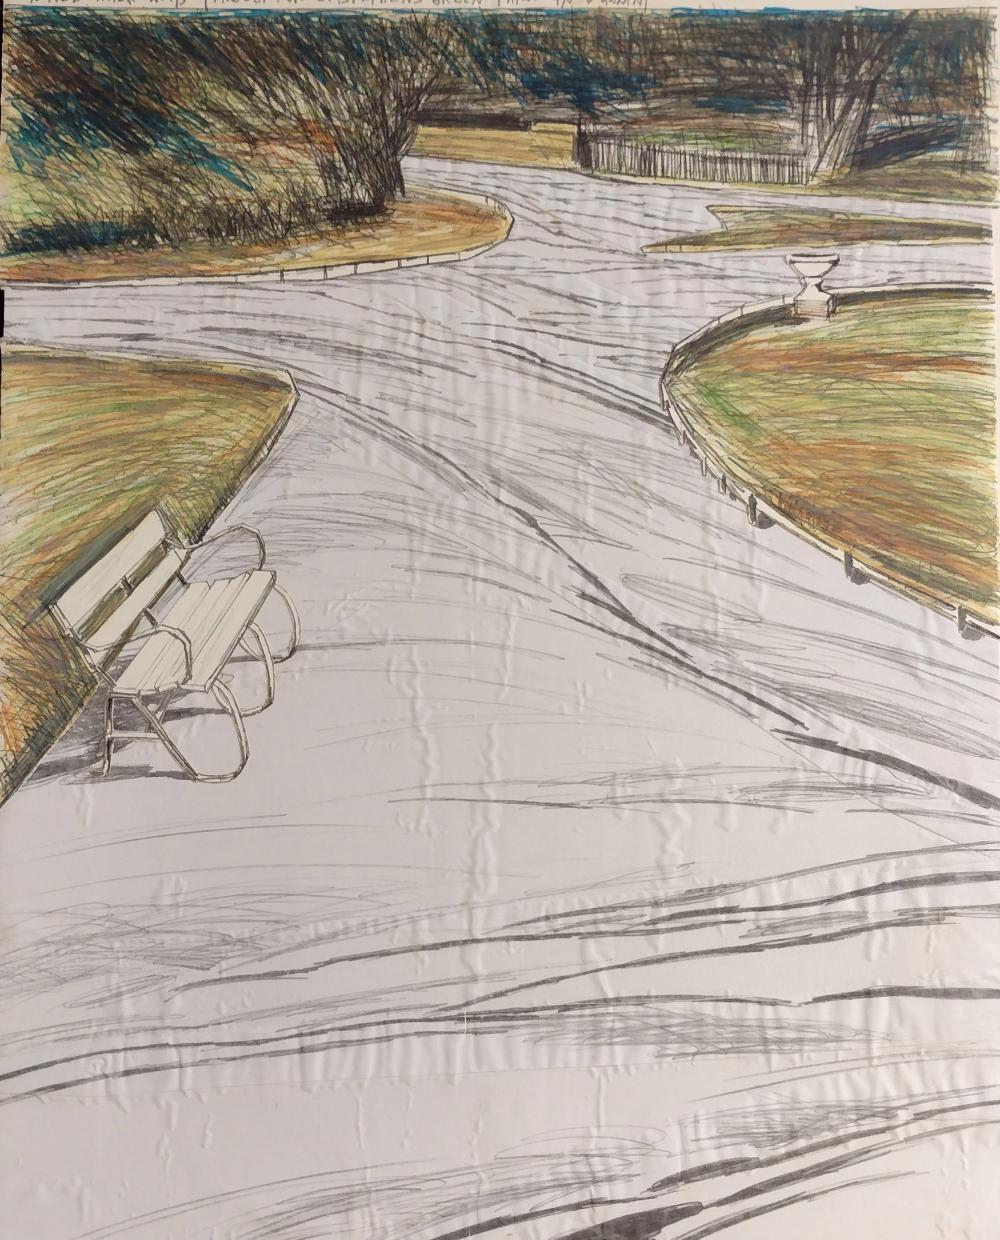 Christo und Jeanne-Claude
Eingewickelte Gehwege, 1983
Lithographie auf Arches Cover White auf Museumskarton montiert, mit Collage aus weißem Stoff
28 × 44 in. - 71 × 112 cm
Auflage: 68/100
Signiert, nummeriert und datiert mit Bleistift
Herausgeber: